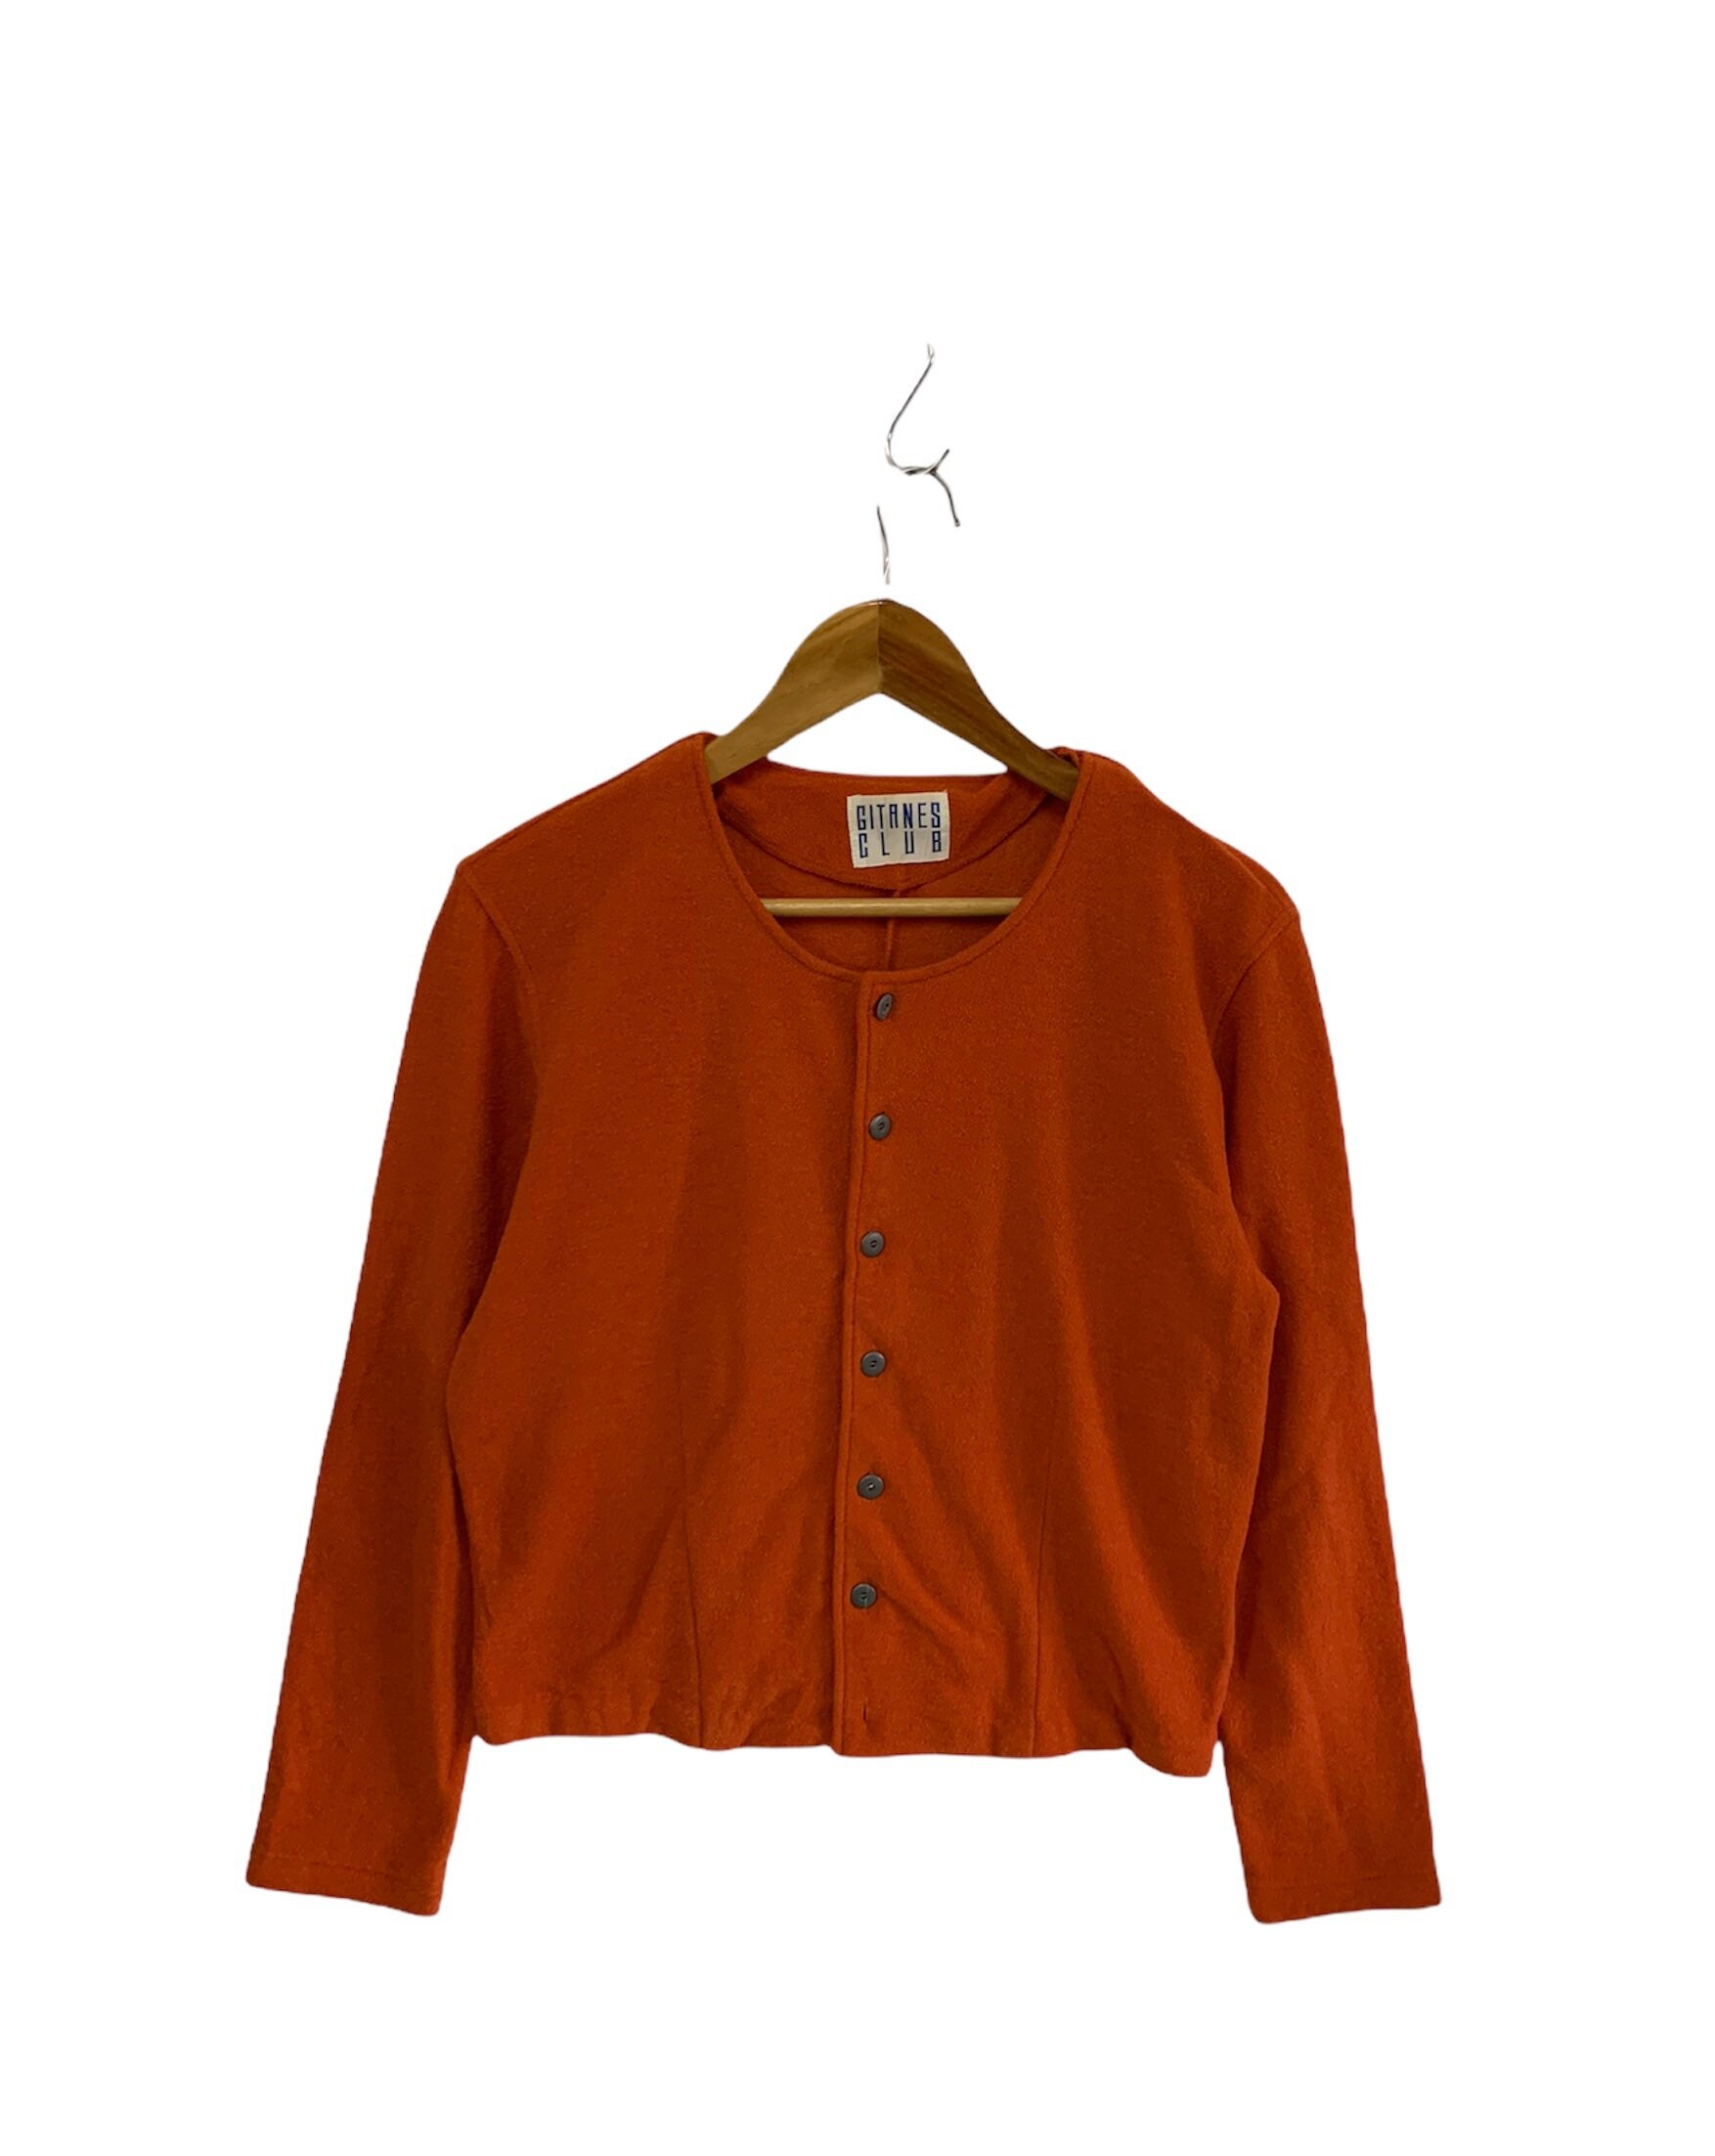 Vintage 90Er Jahre Gitanes Club Sweatshirt Button Ups Made in Japan Frauenjacke Orange von FongfongStudio